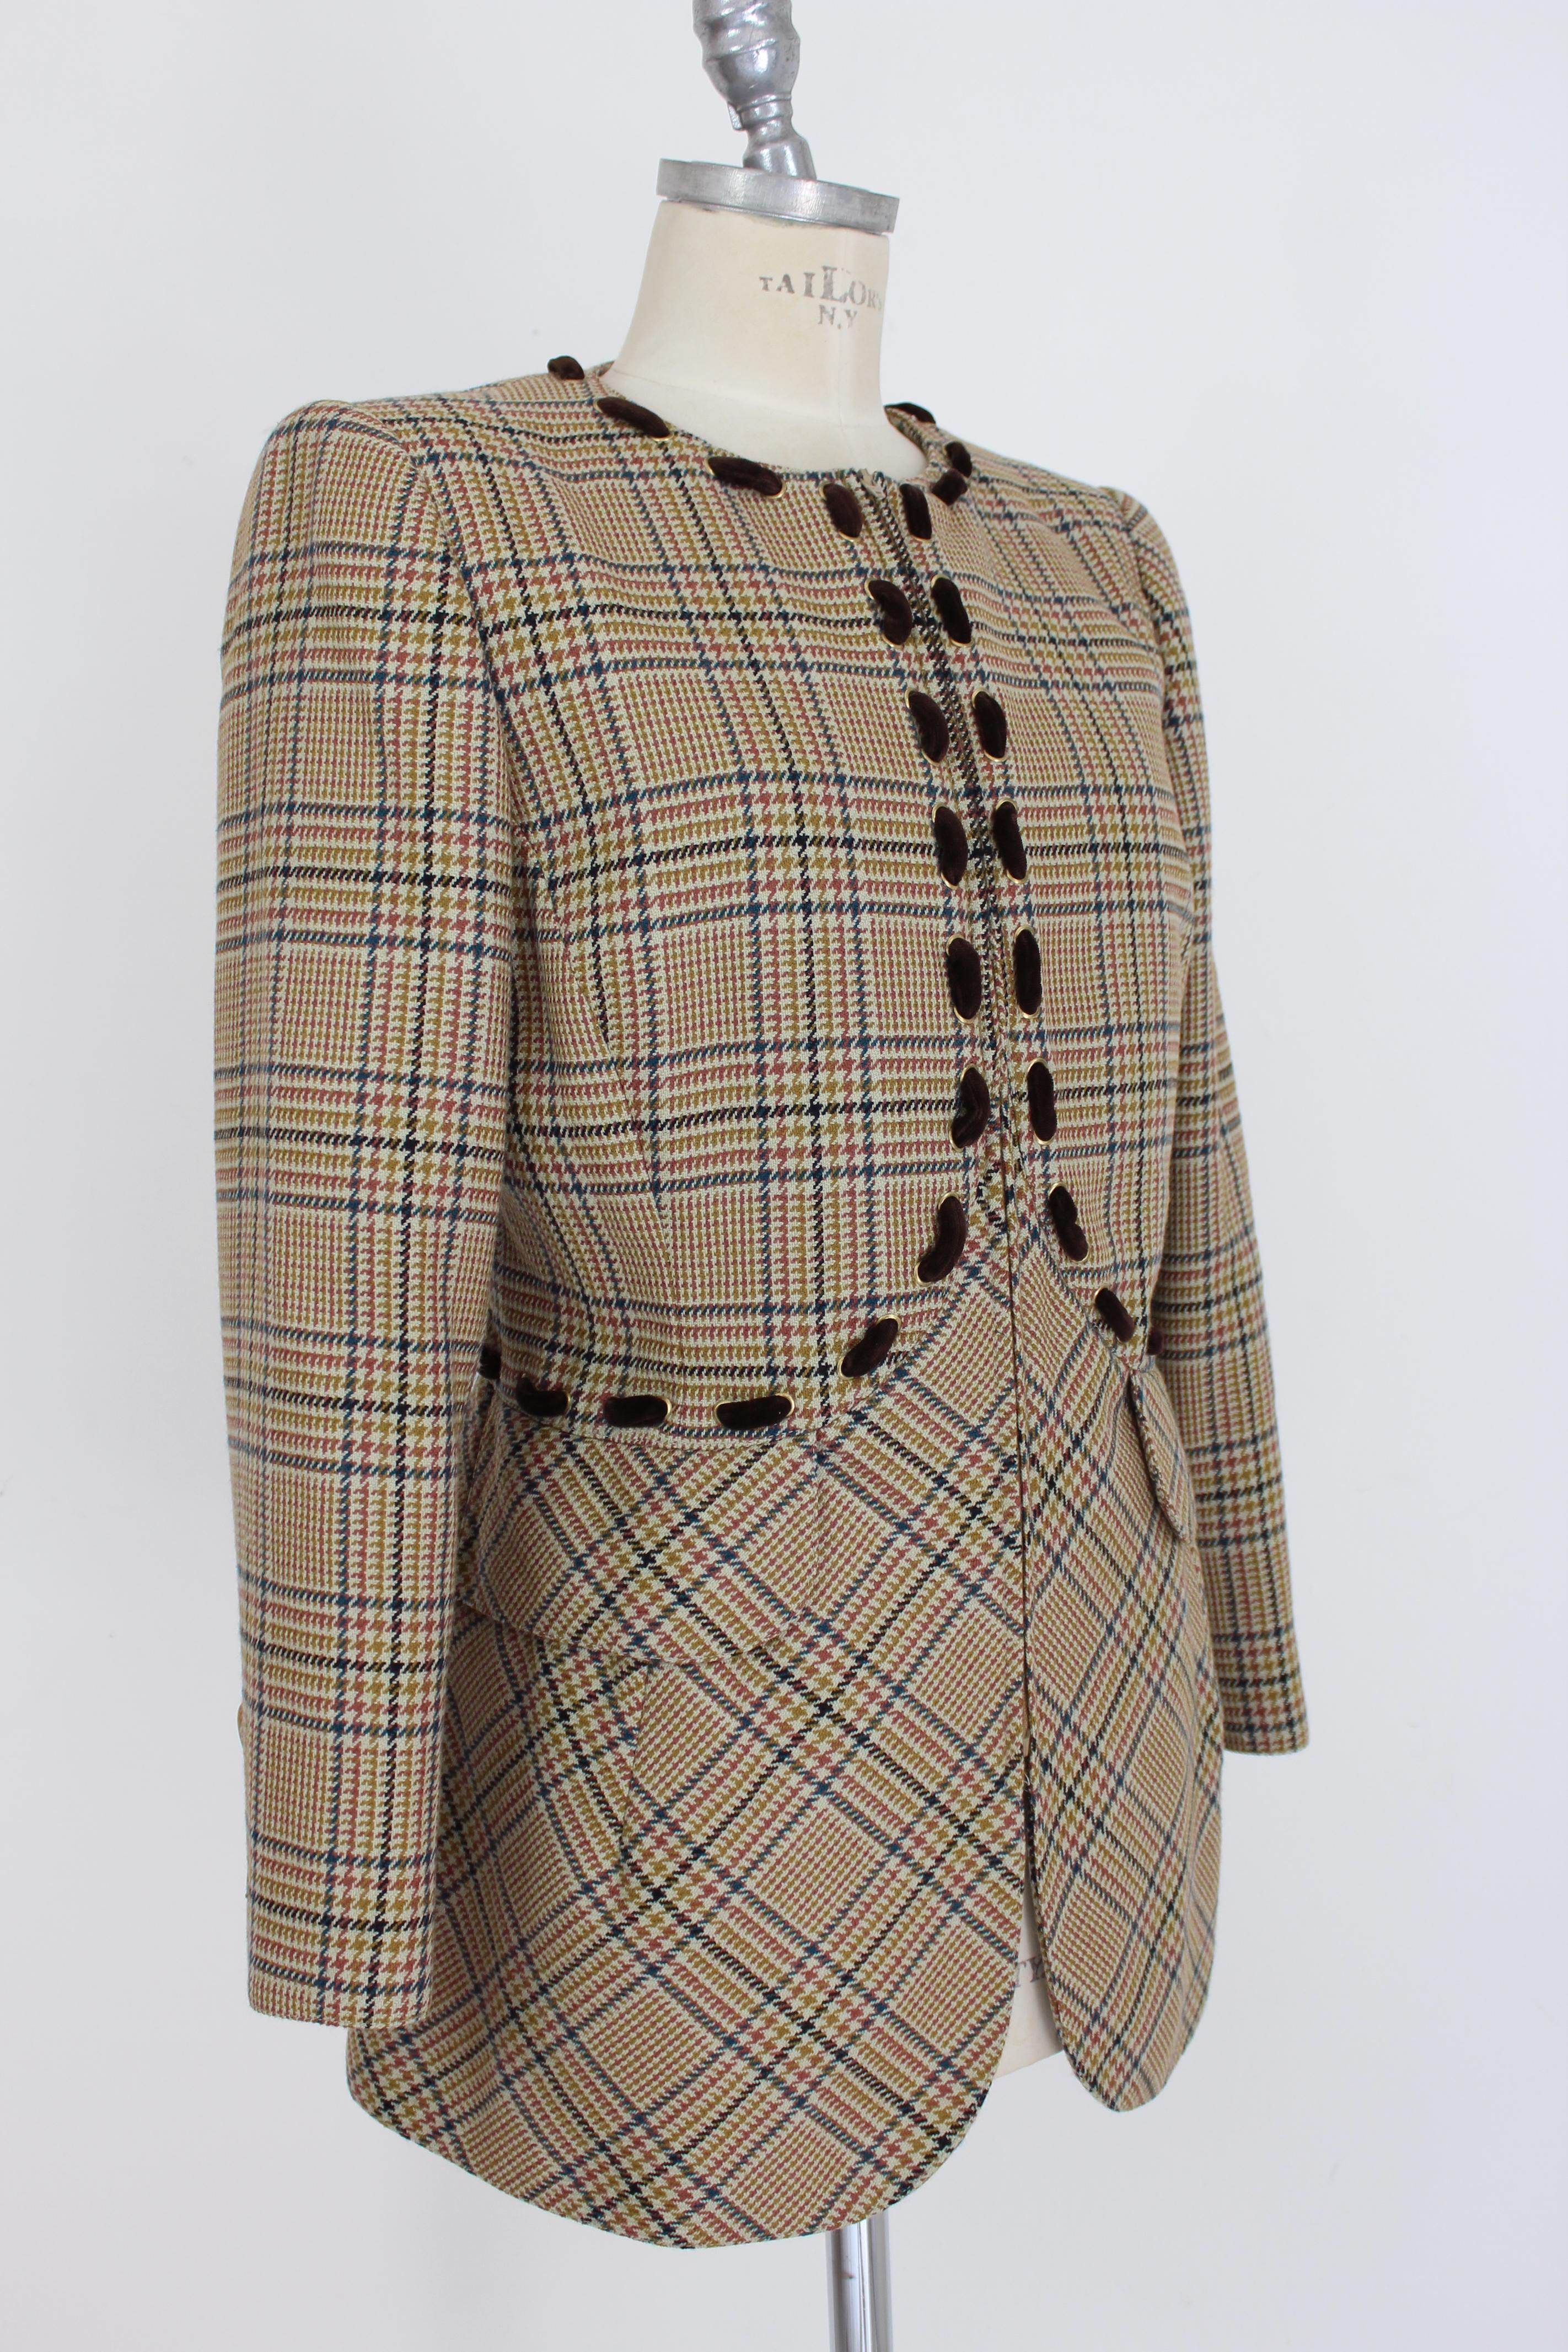 Women's Valentino Boutique Brown Beige Wool Houndstooth Jacket 1980s